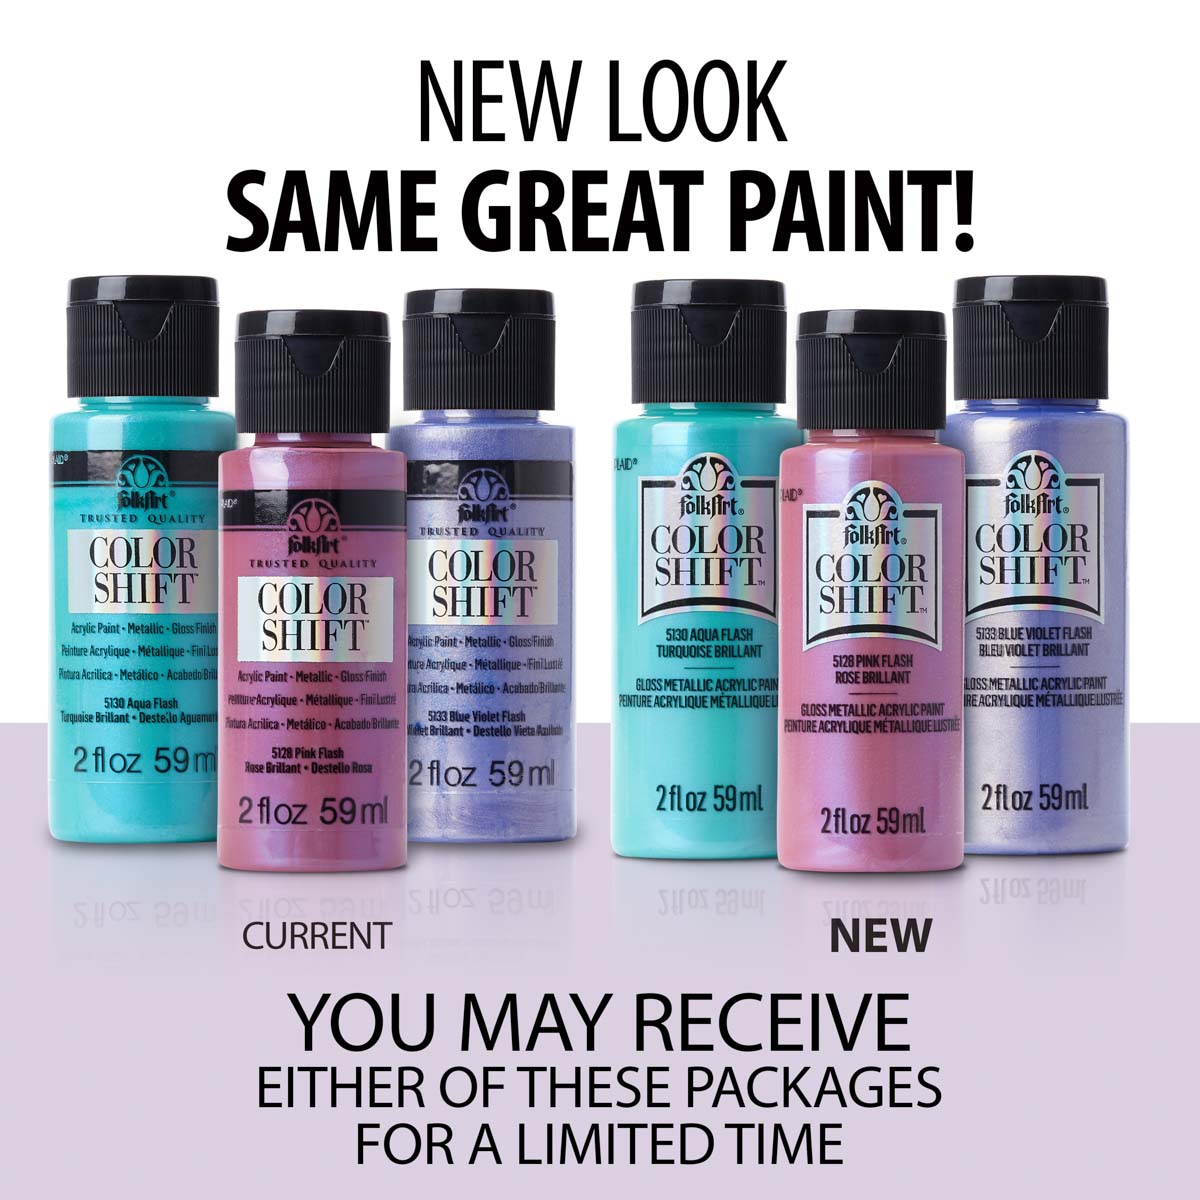 Shop Plaid FolkArt ® Color Shift™ Acrylic Paint - Pink Flash, 2 oz. - 5128  - 5128